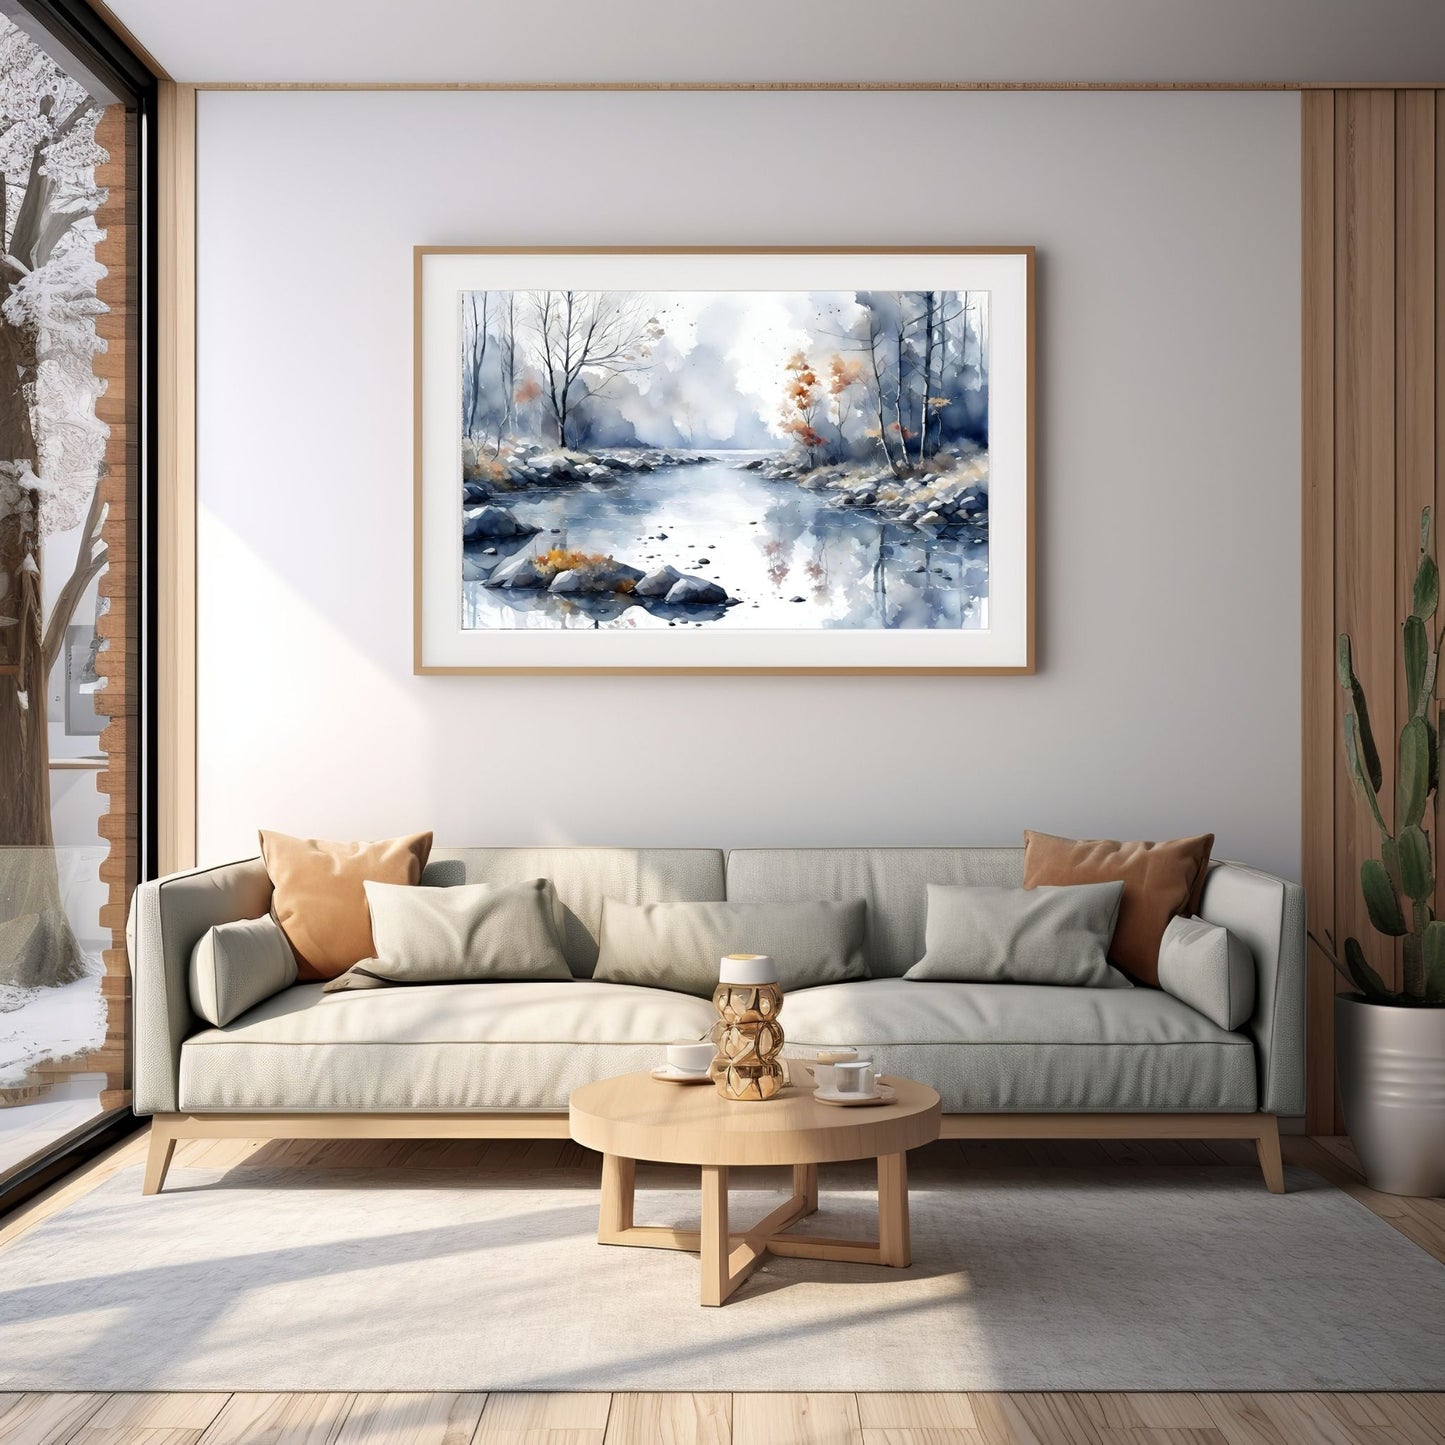 Digitalt kunstmaleri i akvarell som fanger essensen av en magisk høstdag, med et blendende landskap av skiftende løvverk, og en sakteflytende elv.  Illustrasjonsfoto viser motivet som plakat i en ramme som henger over en sofa.